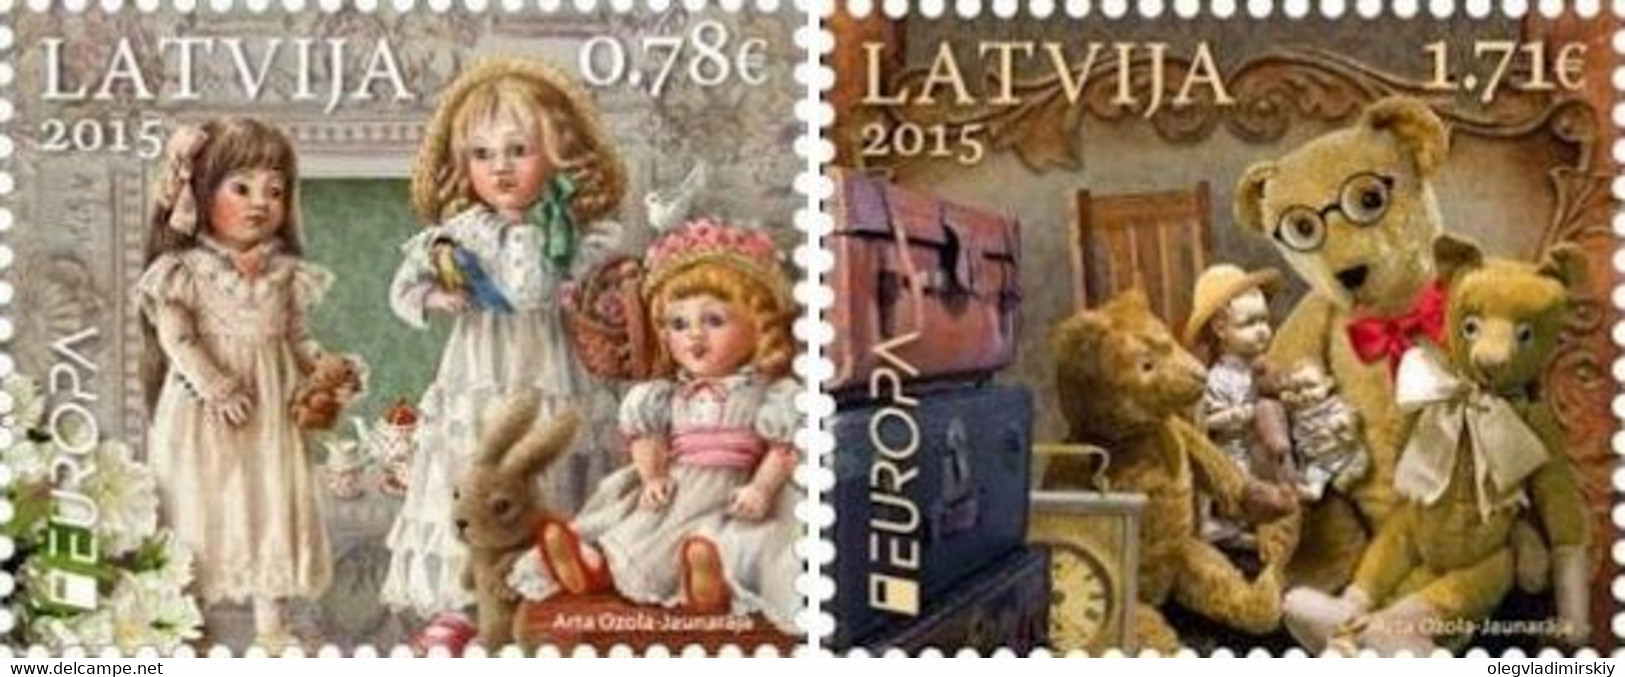 Latvia 2015 Europa CEPT Old Toys Set Of 2 Stamps Mint - Poupées